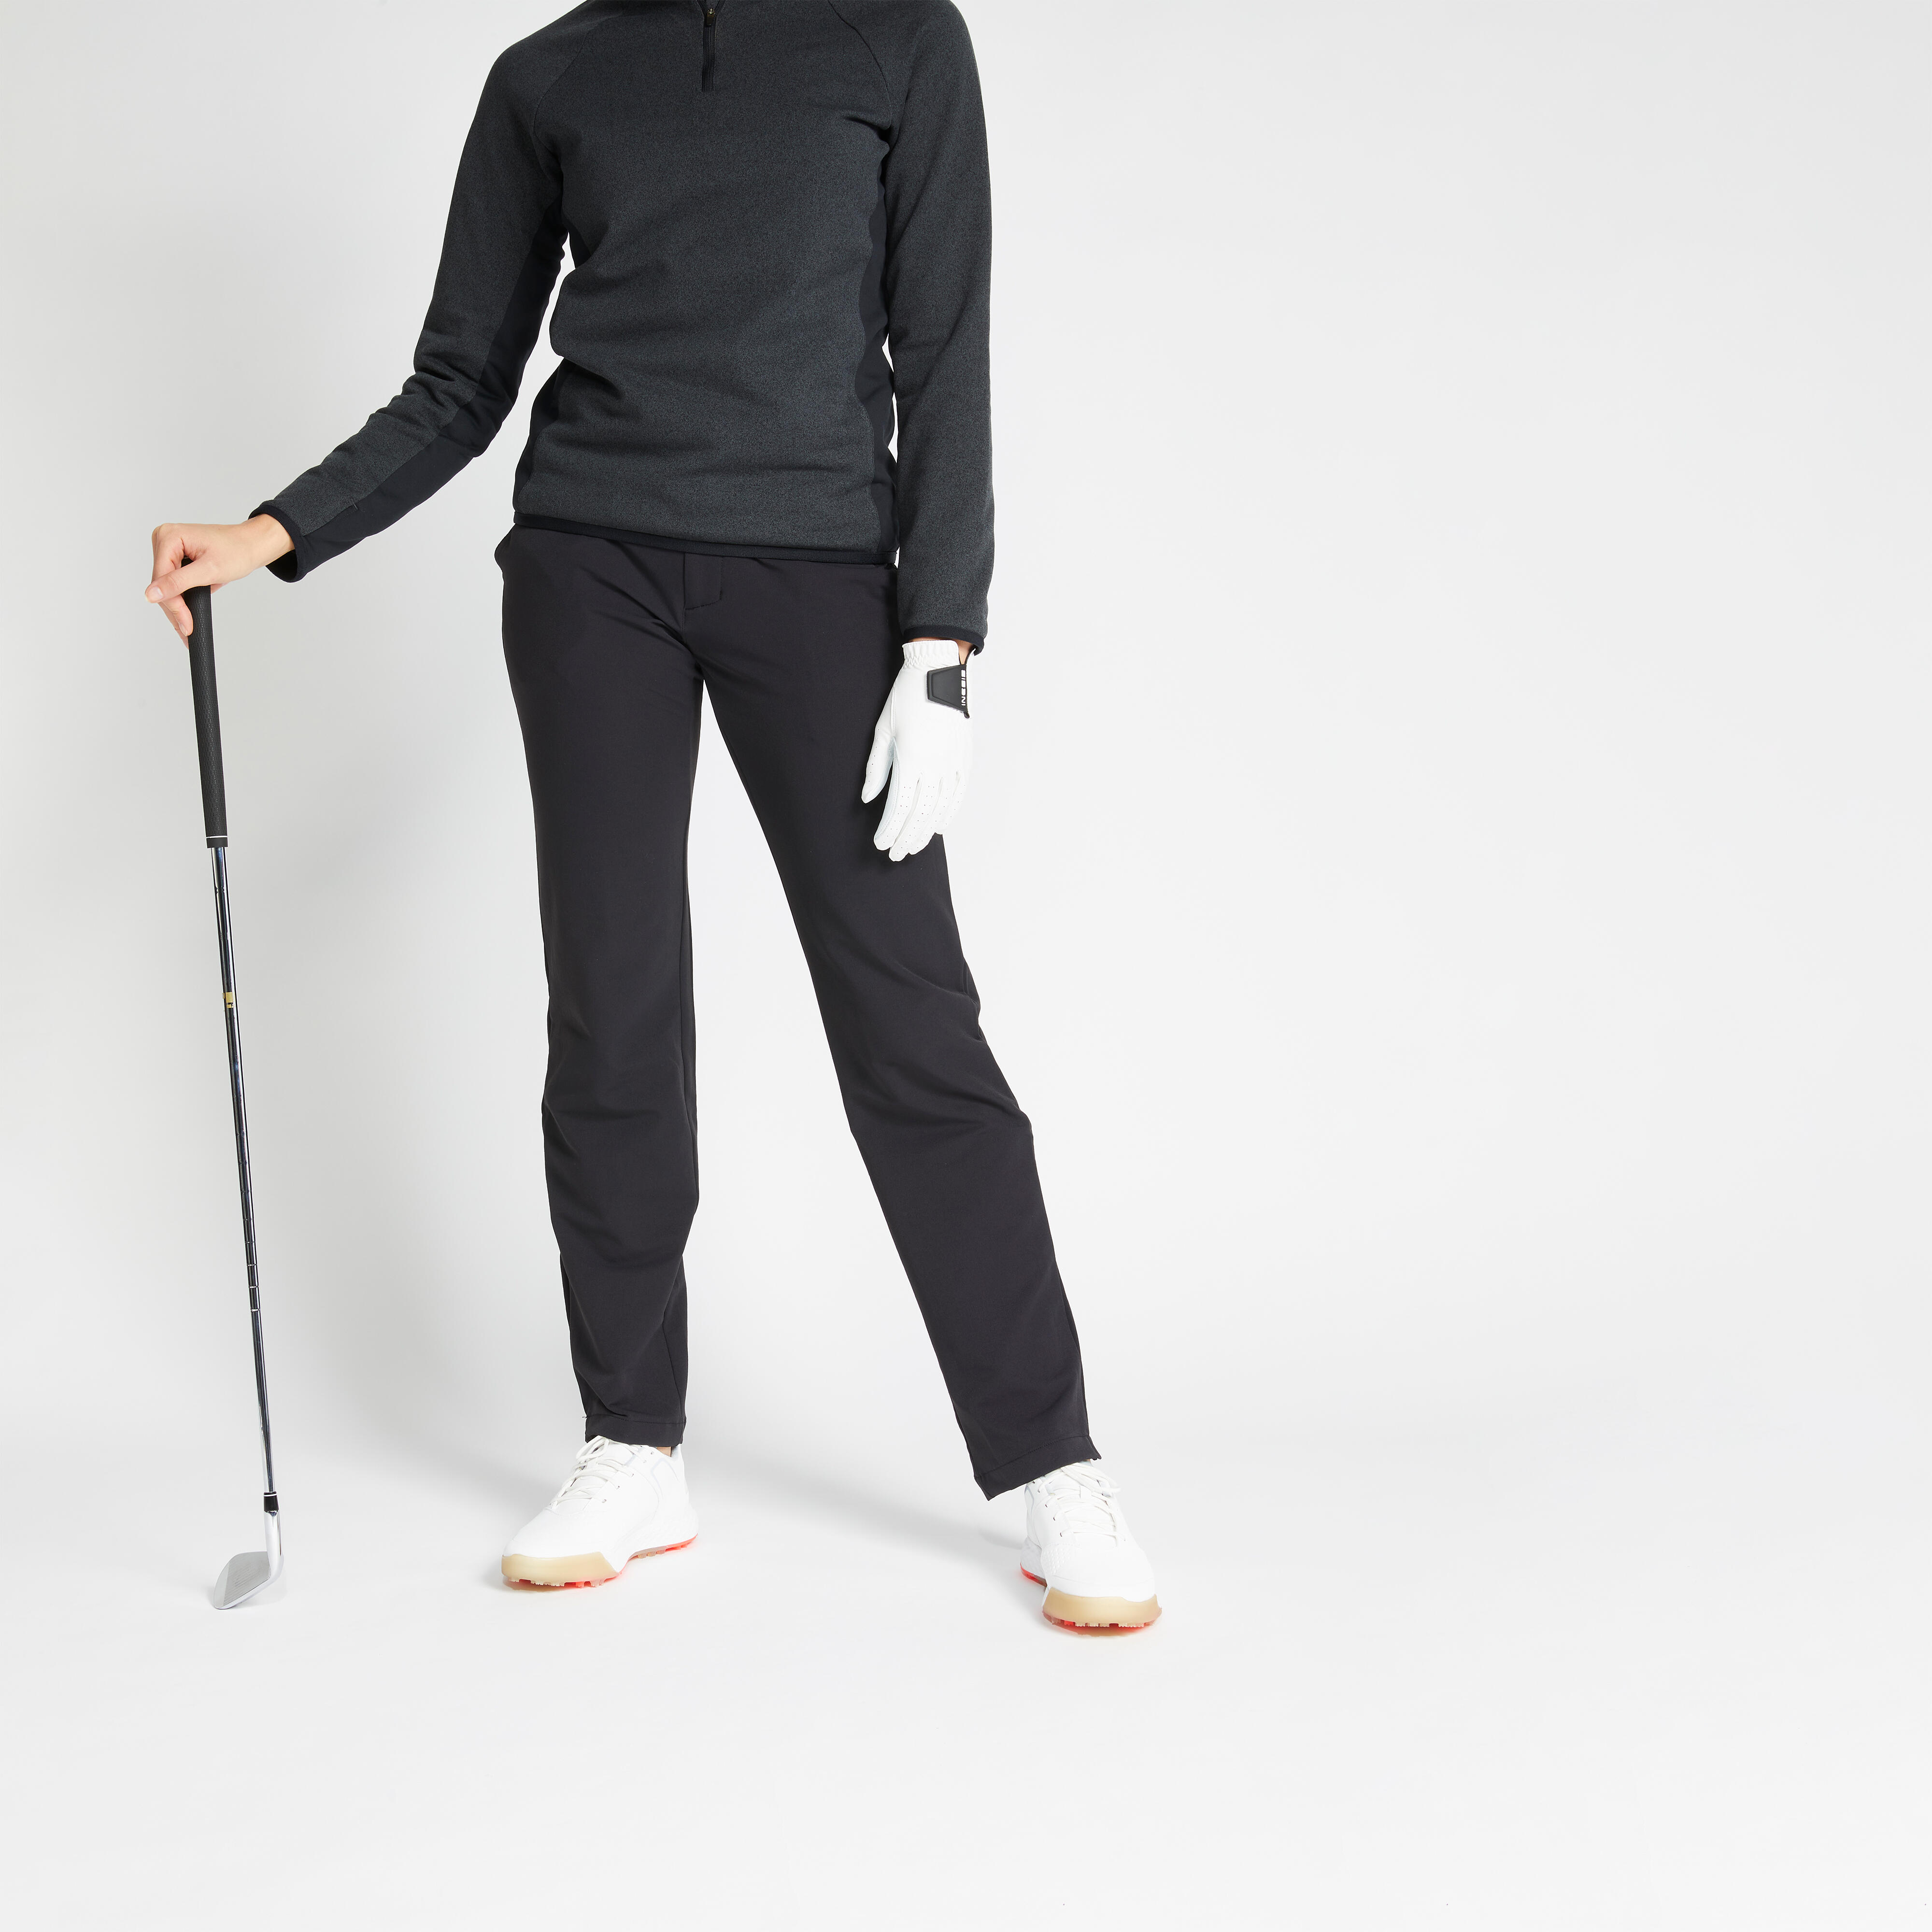 Pro-Tech Winter Tech Trouser - Proquip Golf